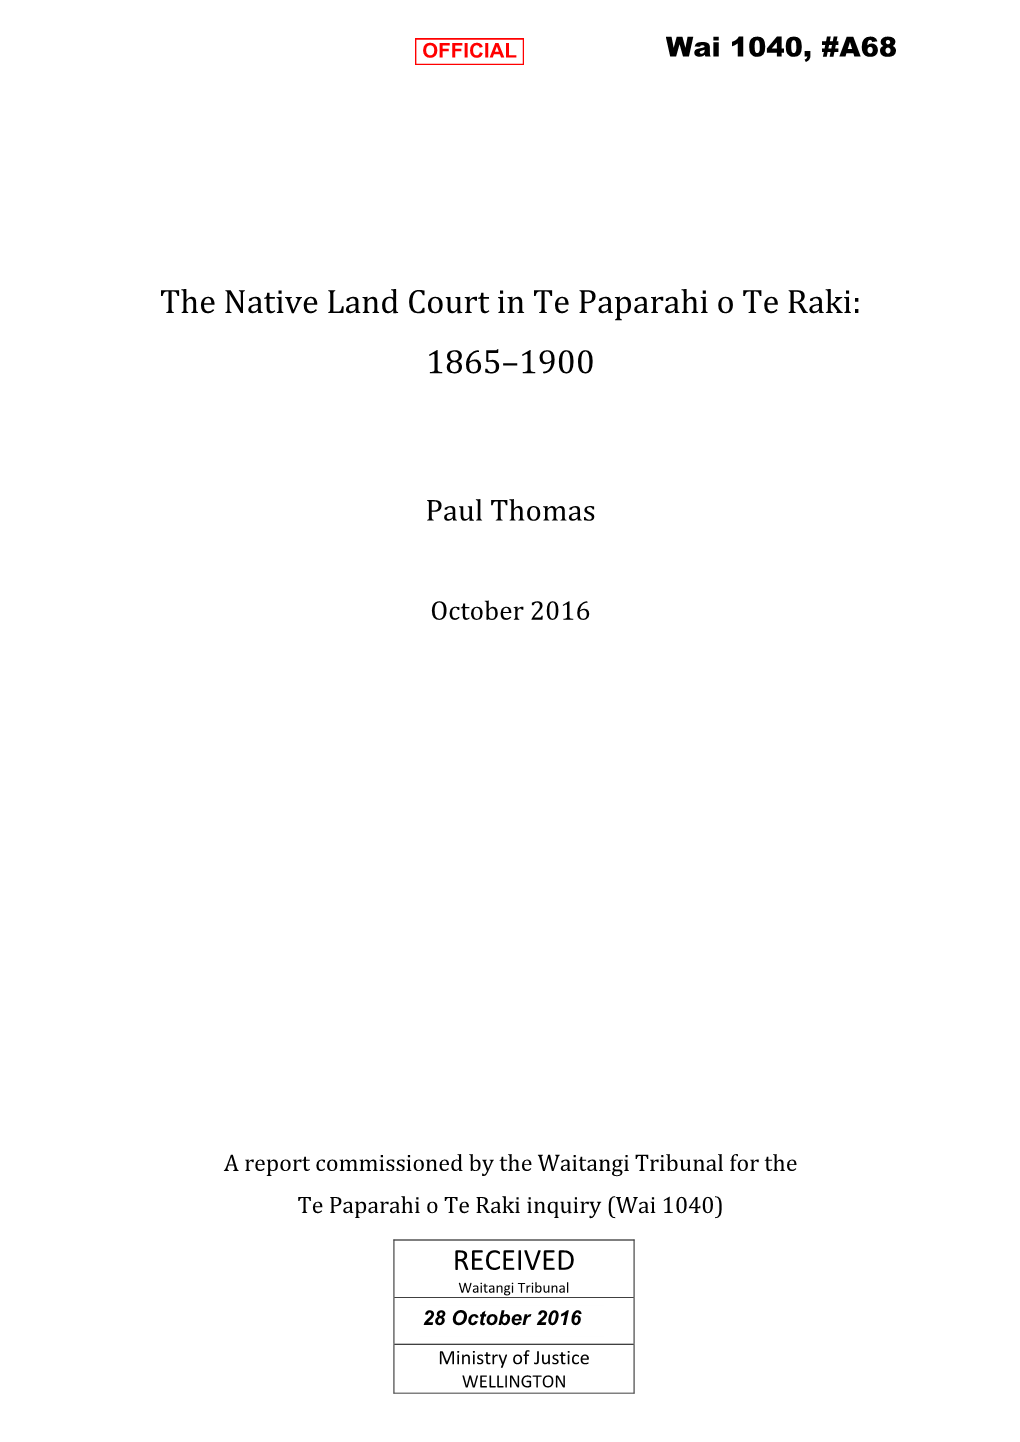 The Native Land Court in Te Paparahi O Te Raki: 1865–1900